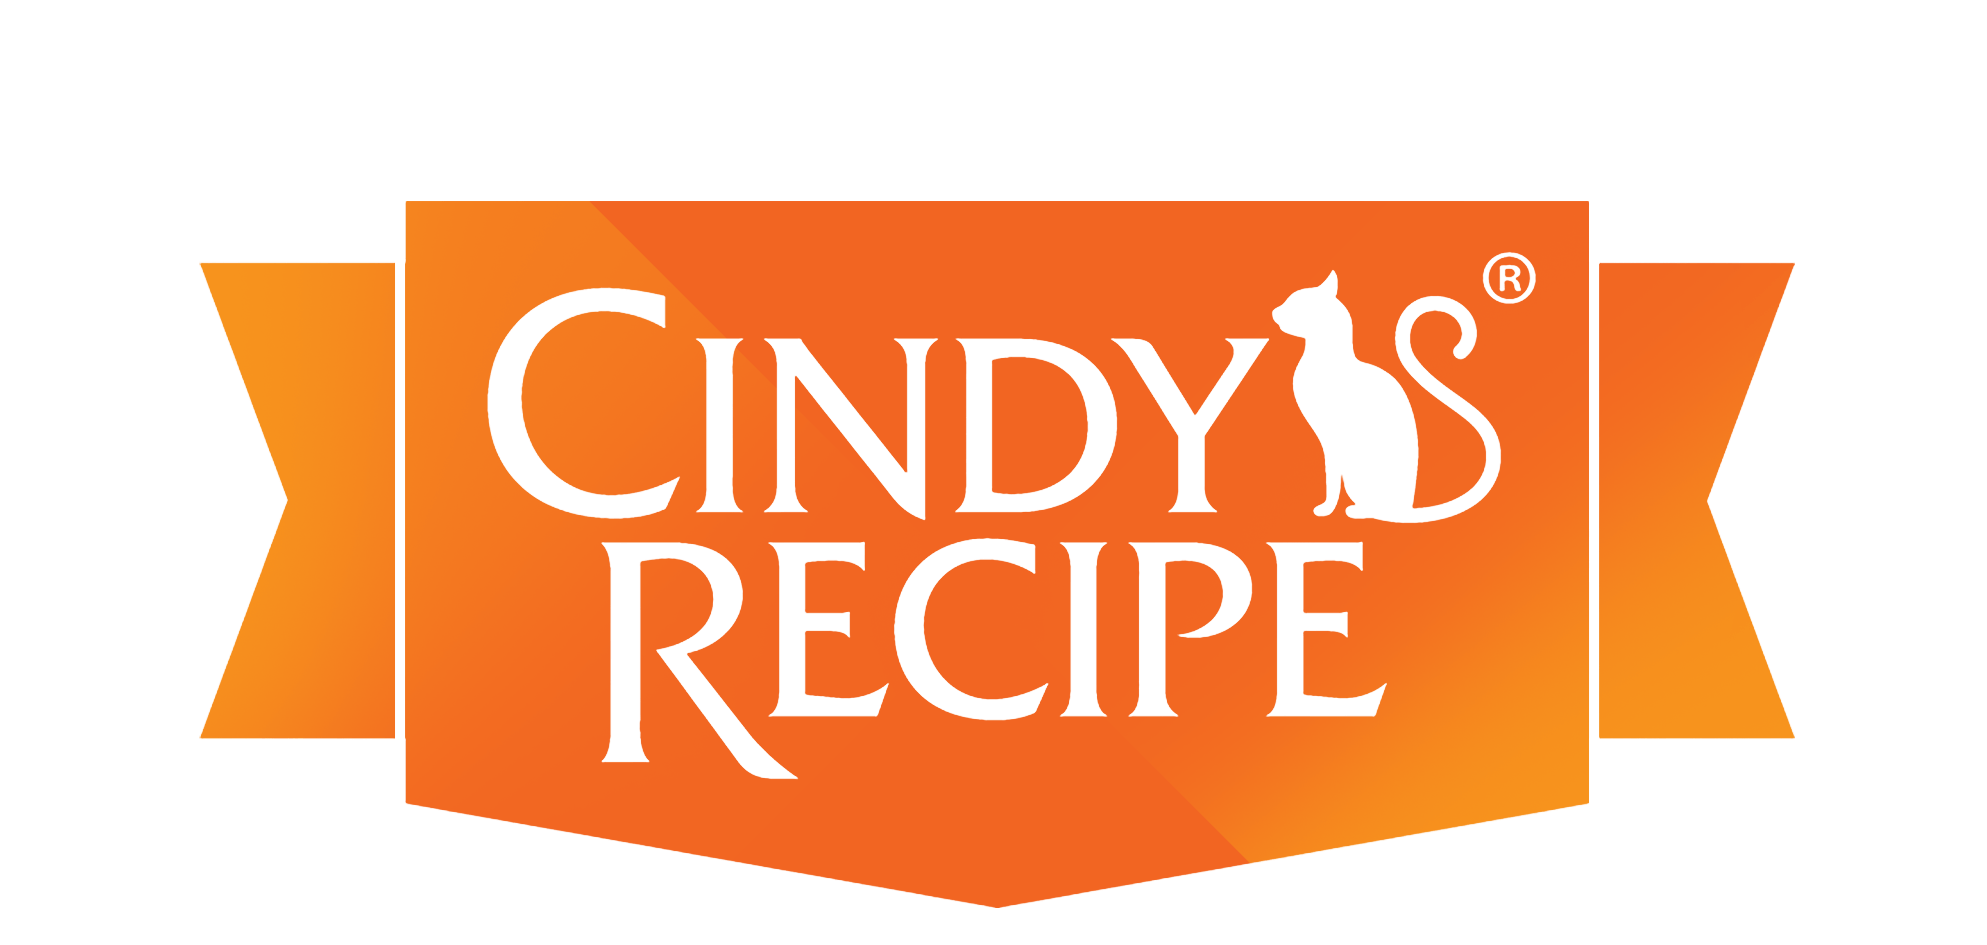 Recipe.com Logo - Cindy's Recipe